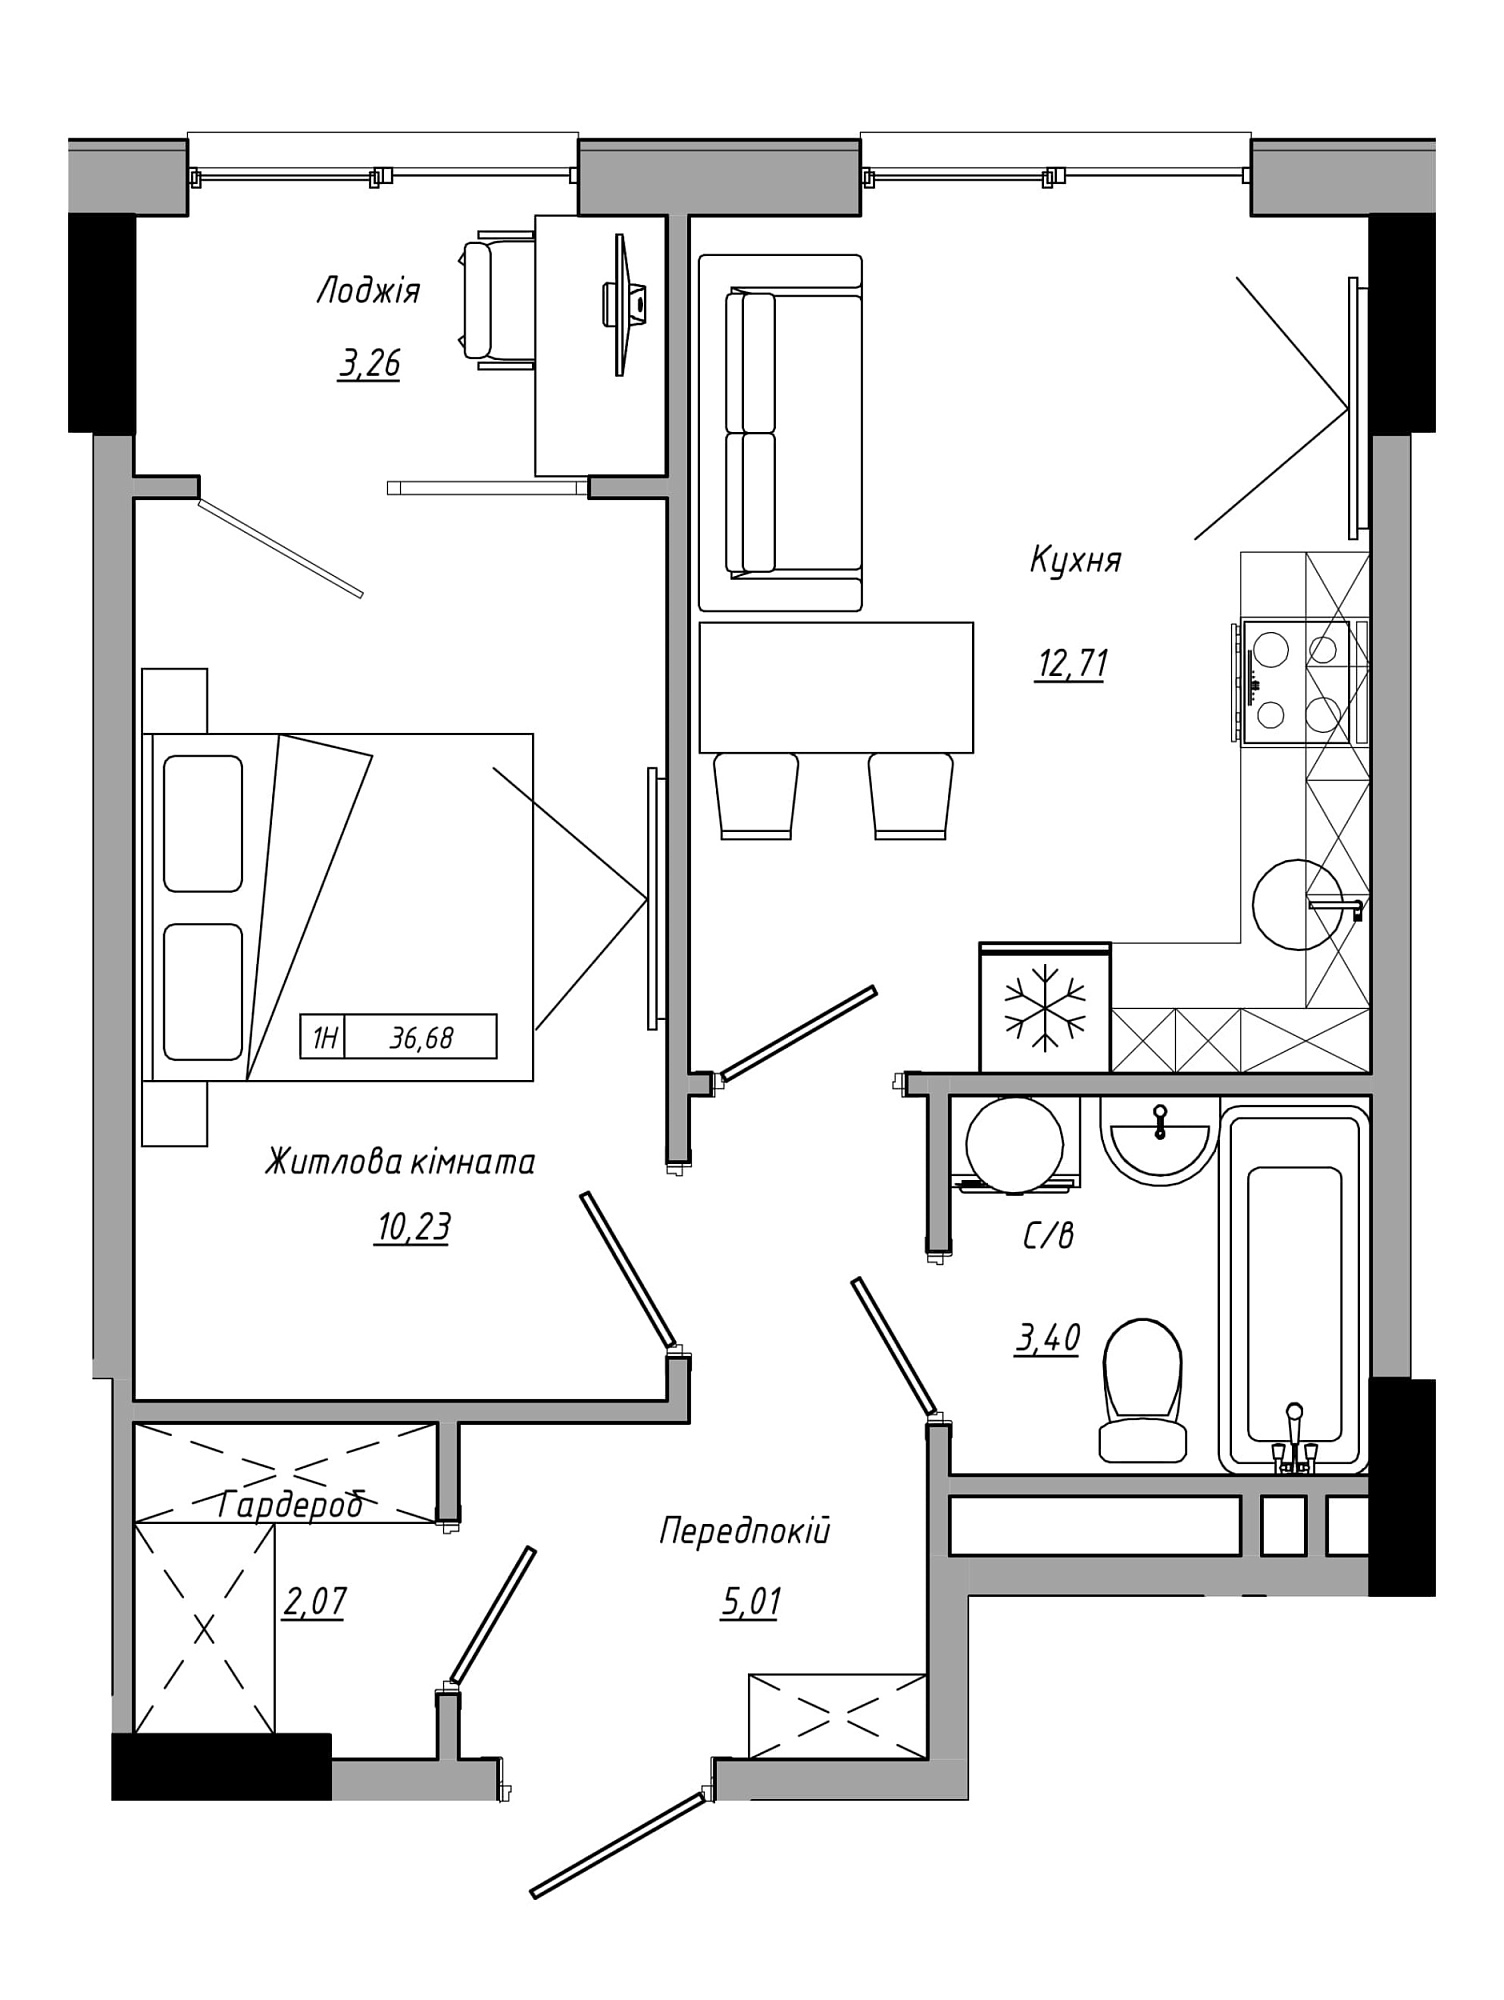 Планировка 1-к квартира площей 36.68м2, AB-21-09/00016.